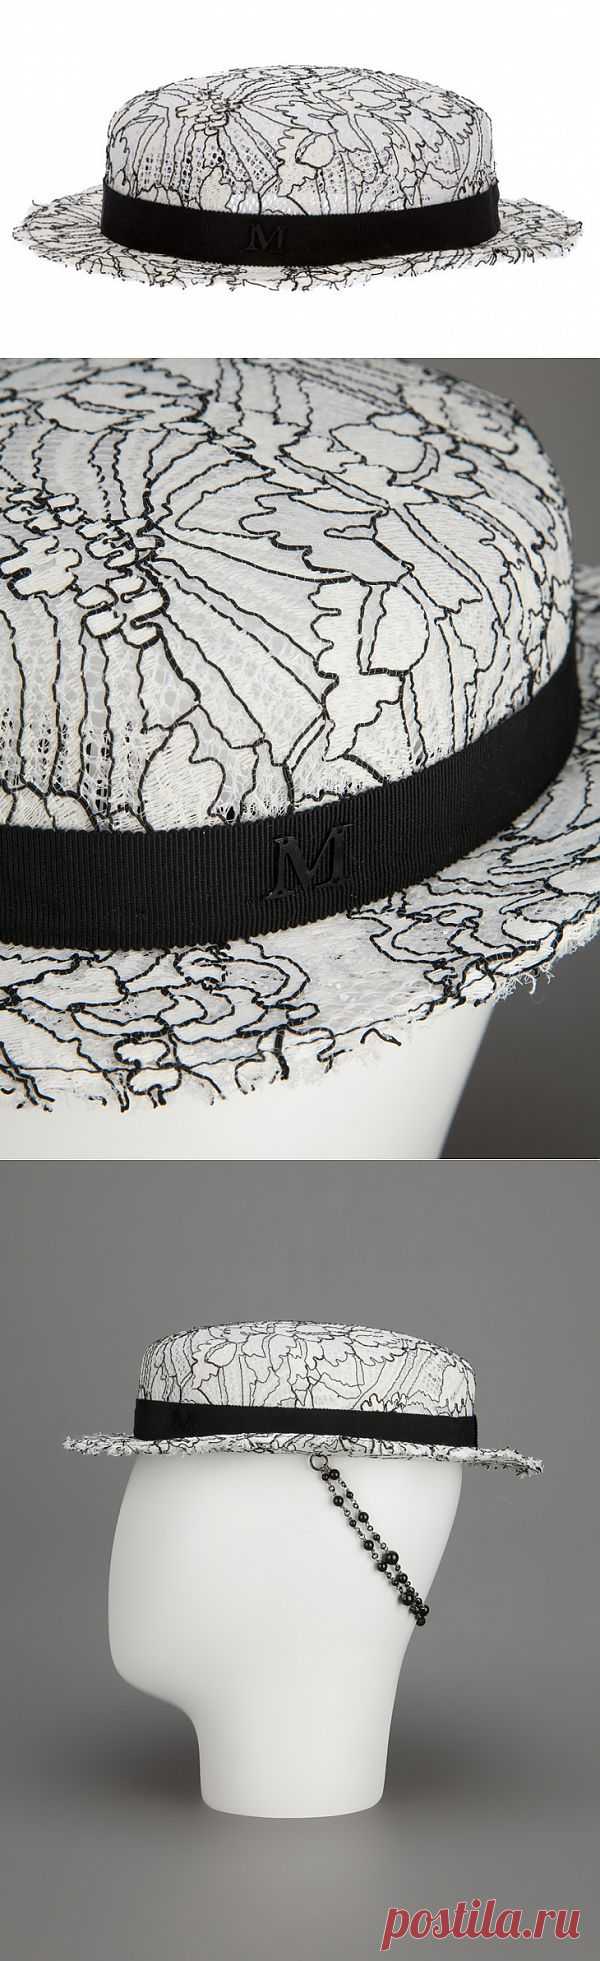 Вышитая шляпка Maison Michel / Головные уборы / Модный сайт о стильной переделке одежды и интерьера